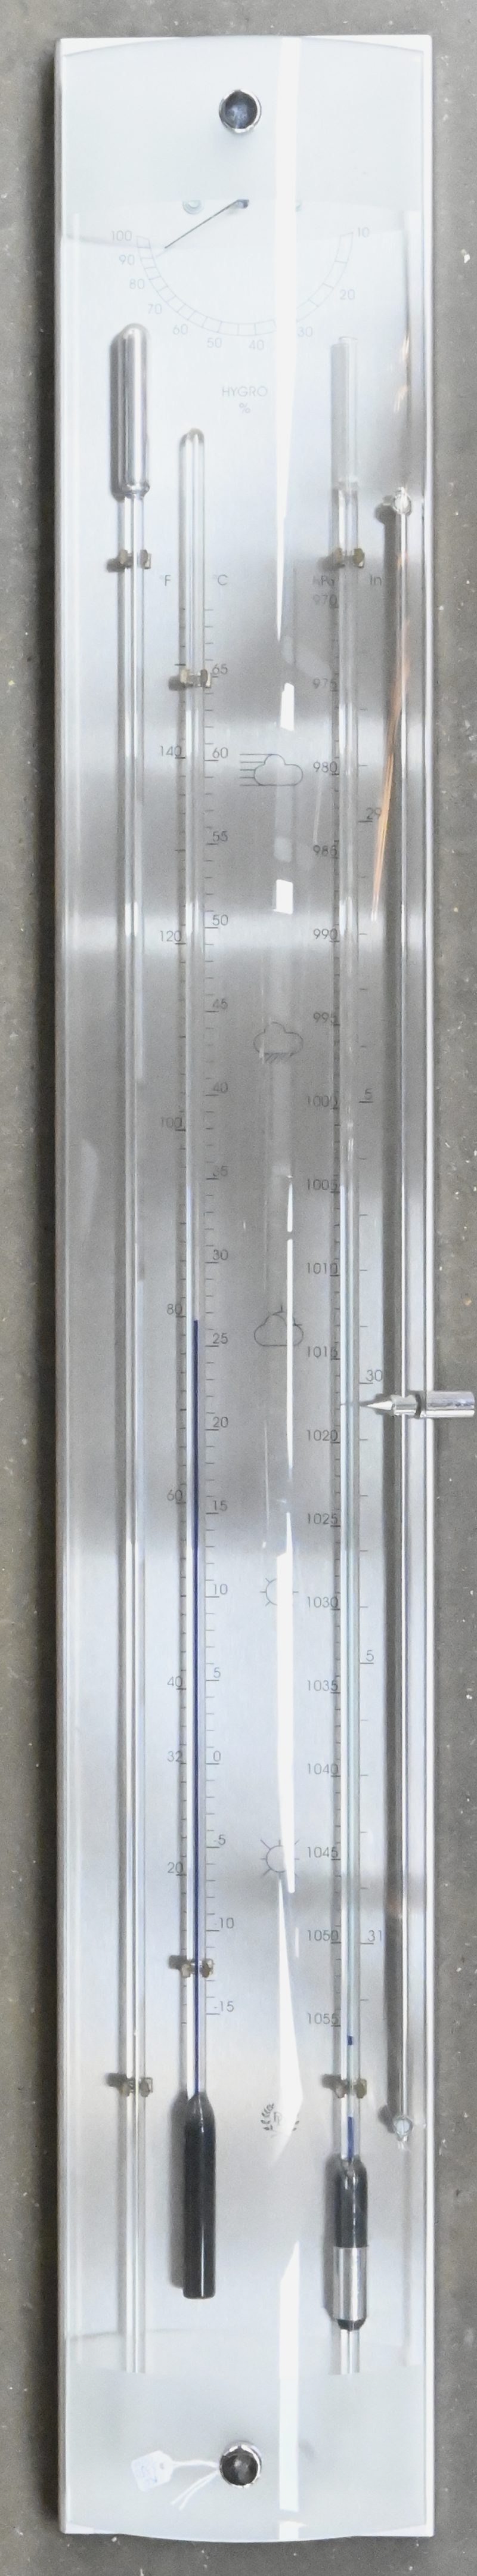 Een moderne RVS contrabarometer met bol glazen front. Thermometer en haarhygrometer. Model K033.519, door Dingens Barometers, made in Belgium.